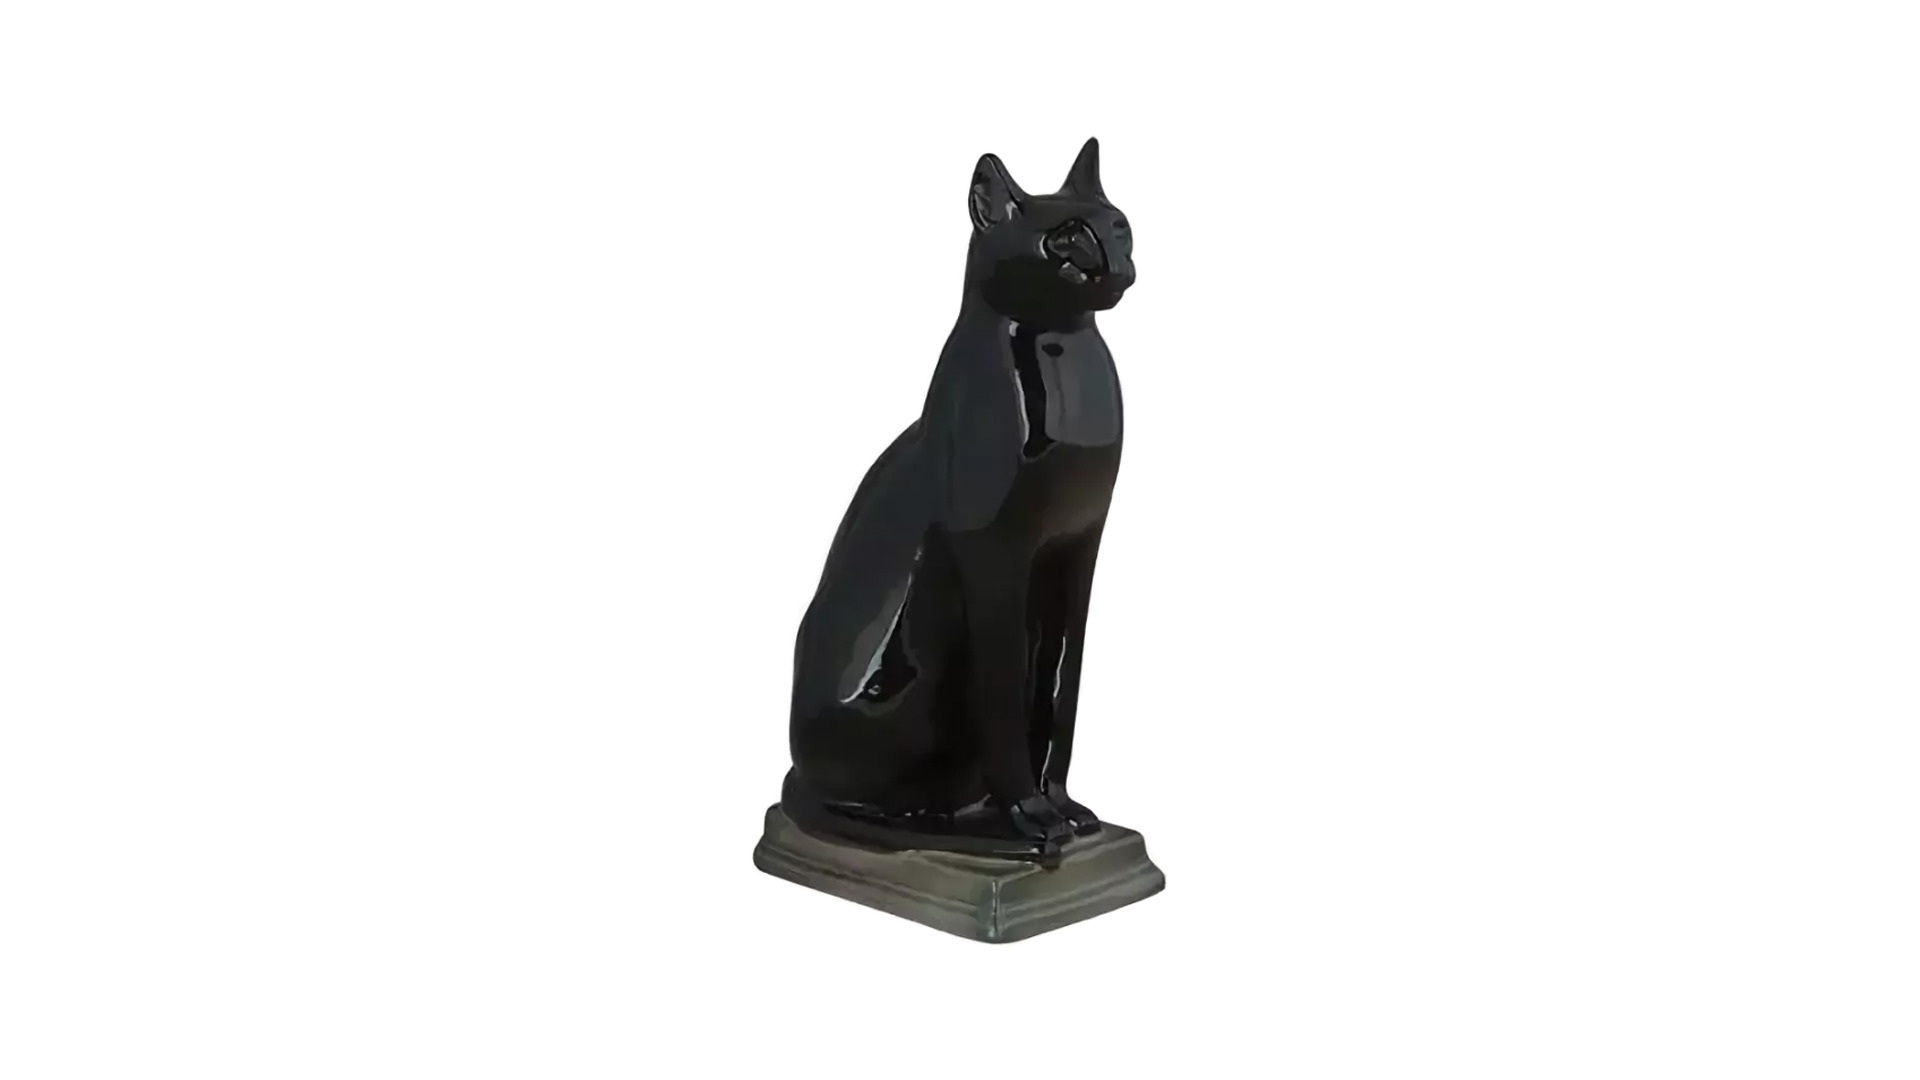 Скульптура ИФЗ Кошка египетская, фарфор твердый